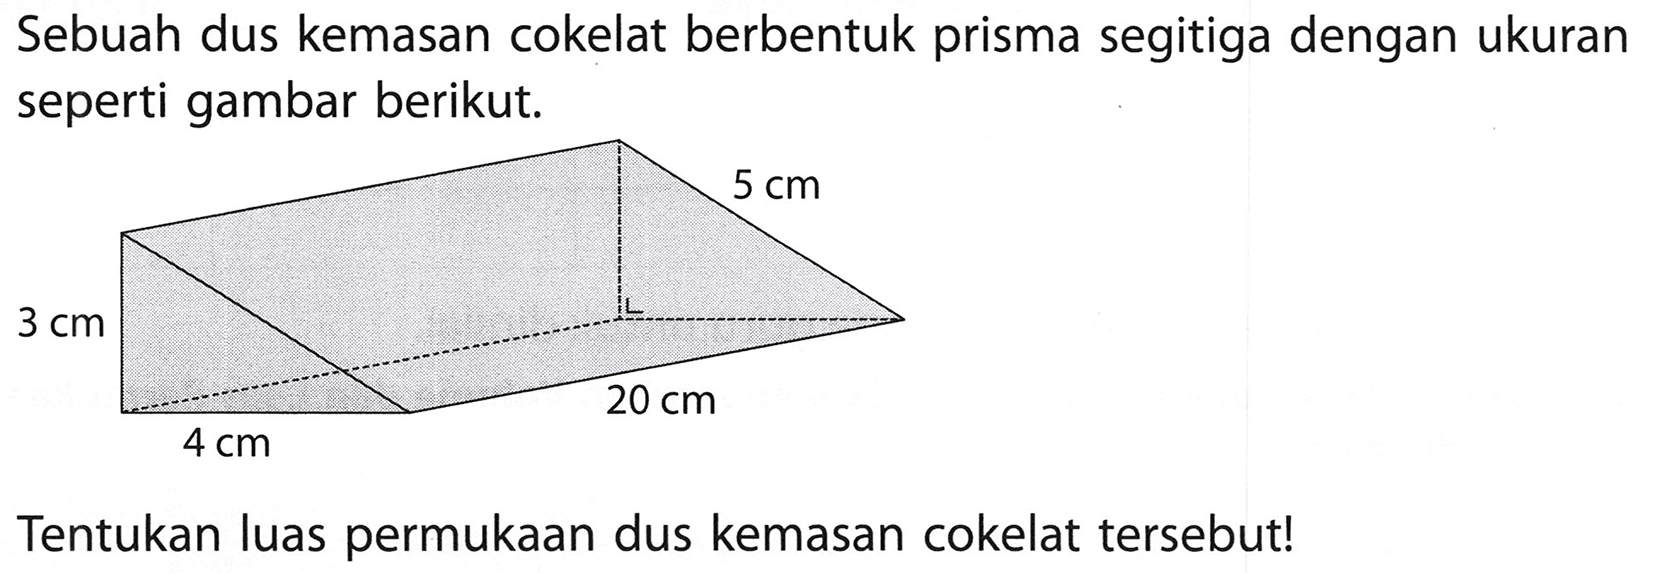 Sebuah dus kemasan cokelat berbentuk prisma segitiga dengan ukuran seperti gambar berikut.
Tentukan luas permukaan dus kemasan cokelat tersebut!